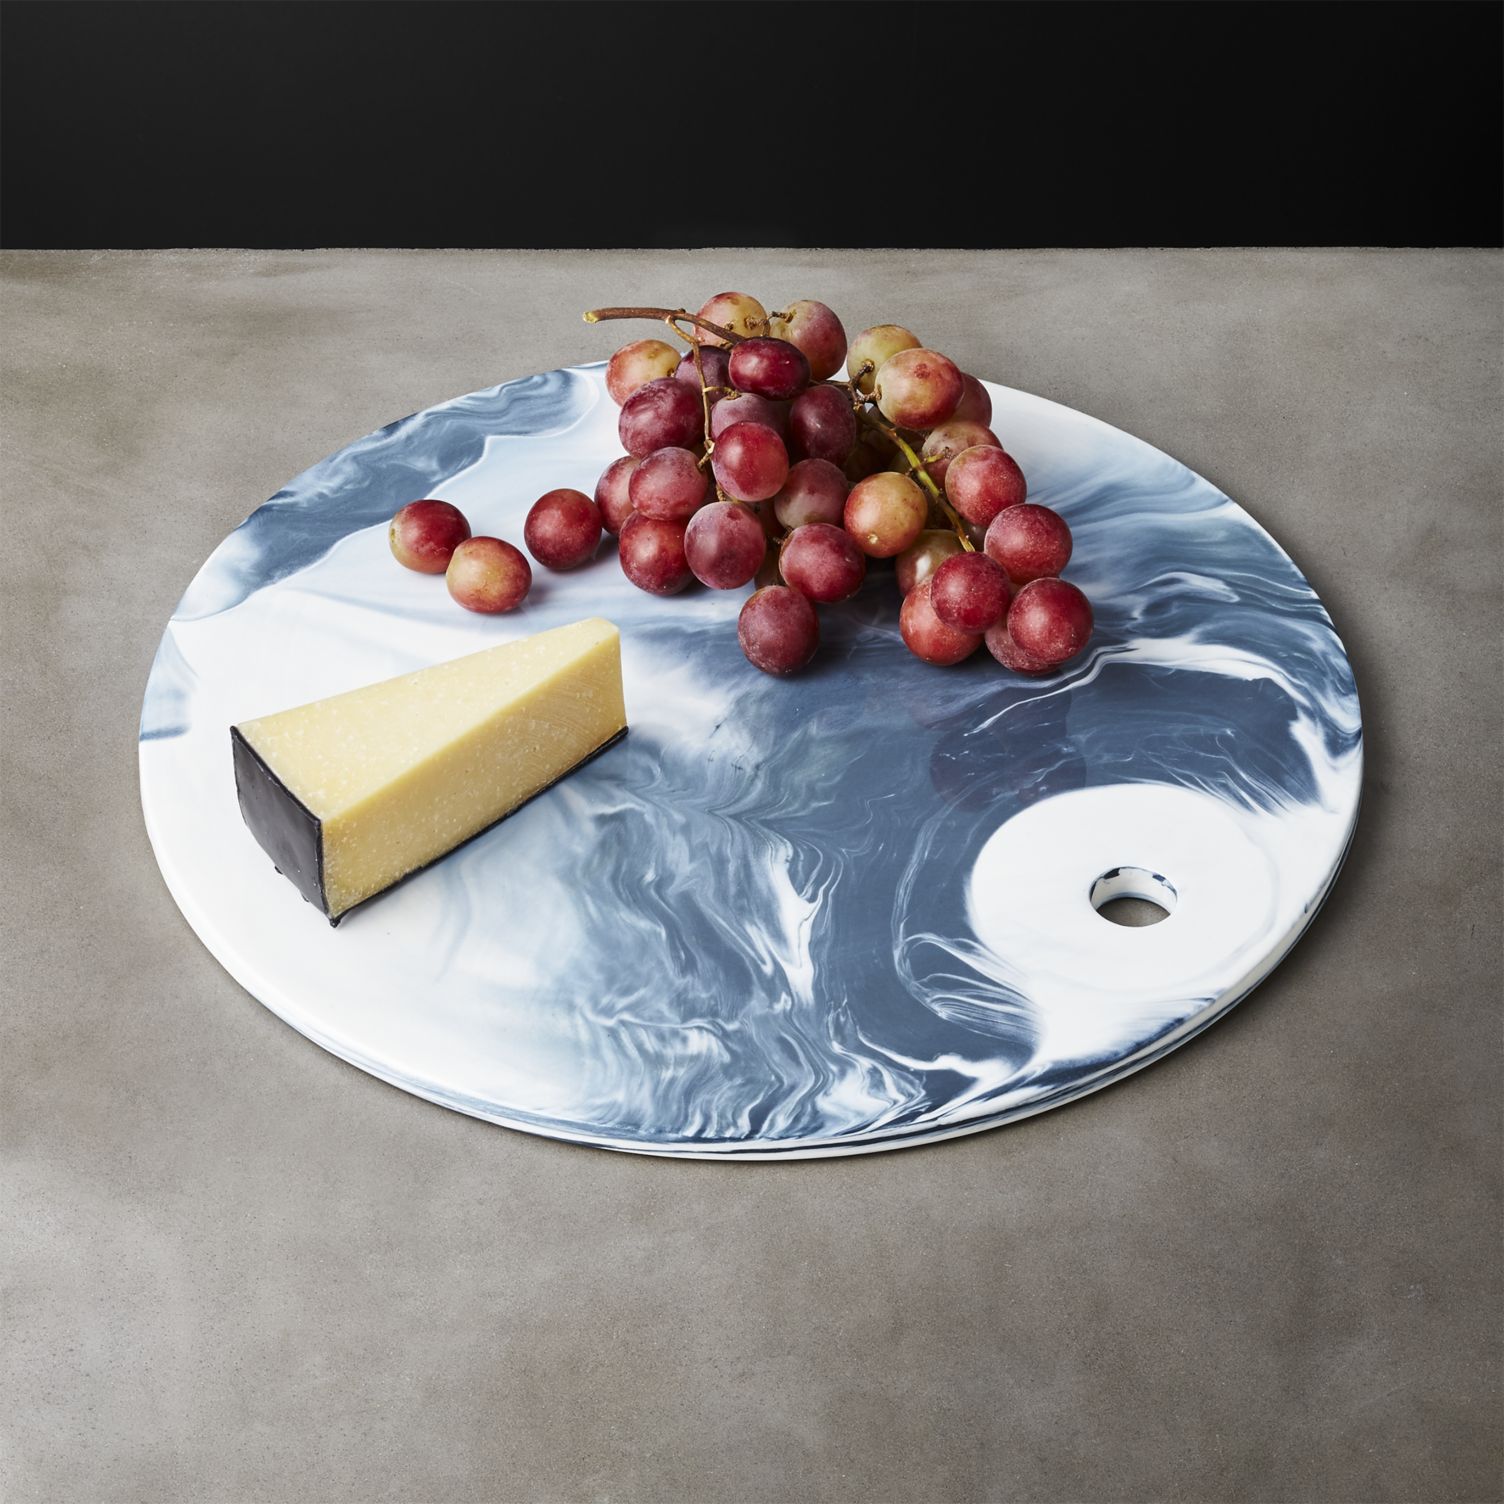 Marbleized-serving-platter-from-CB2